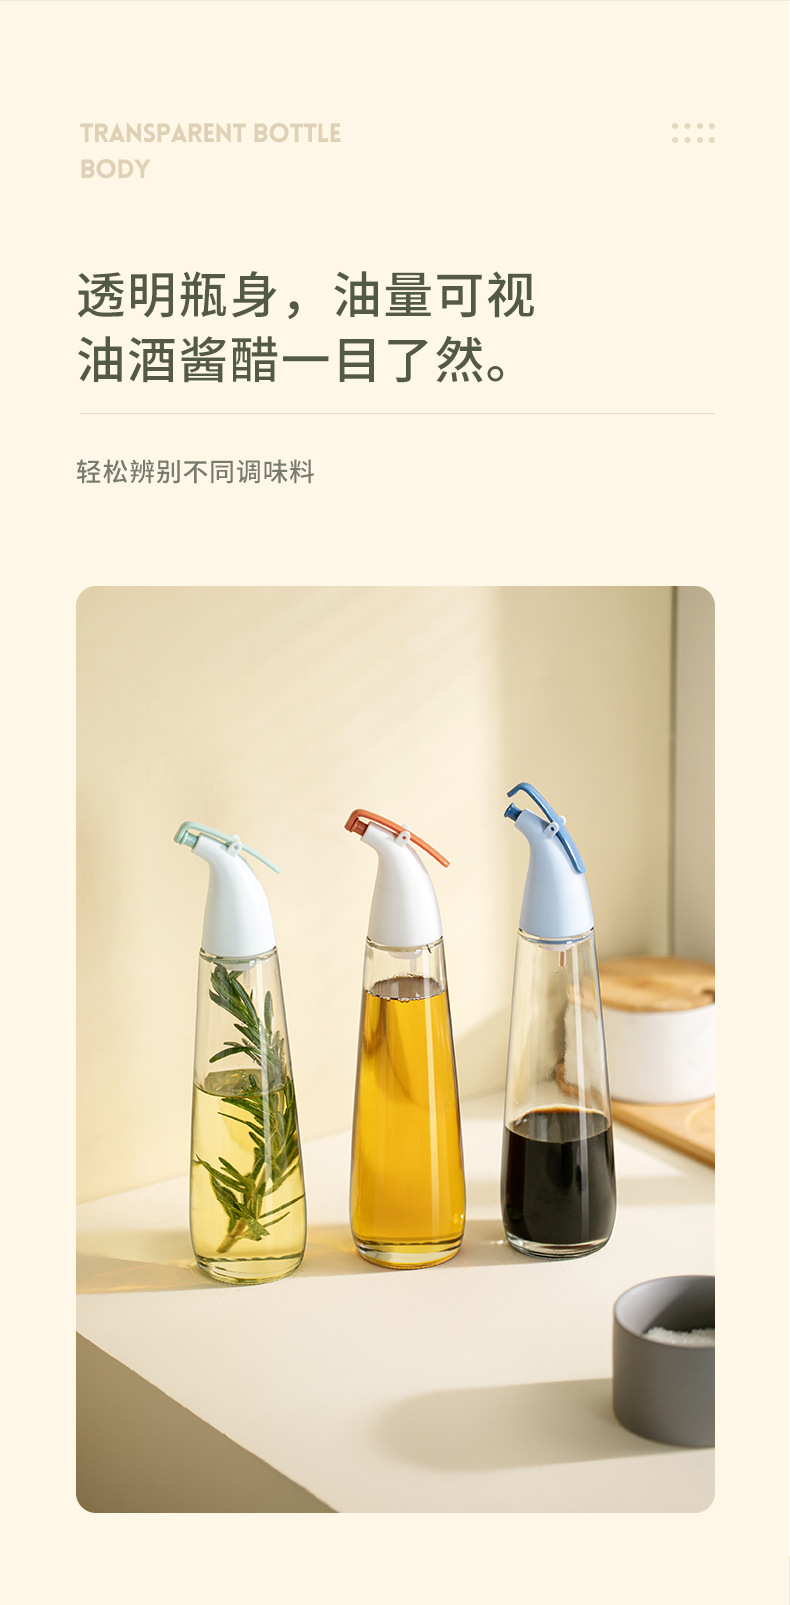 厨房油瓶创意玻璃油壶喷油瓶调味瓶酱油壶自动开合油壶调料瓶